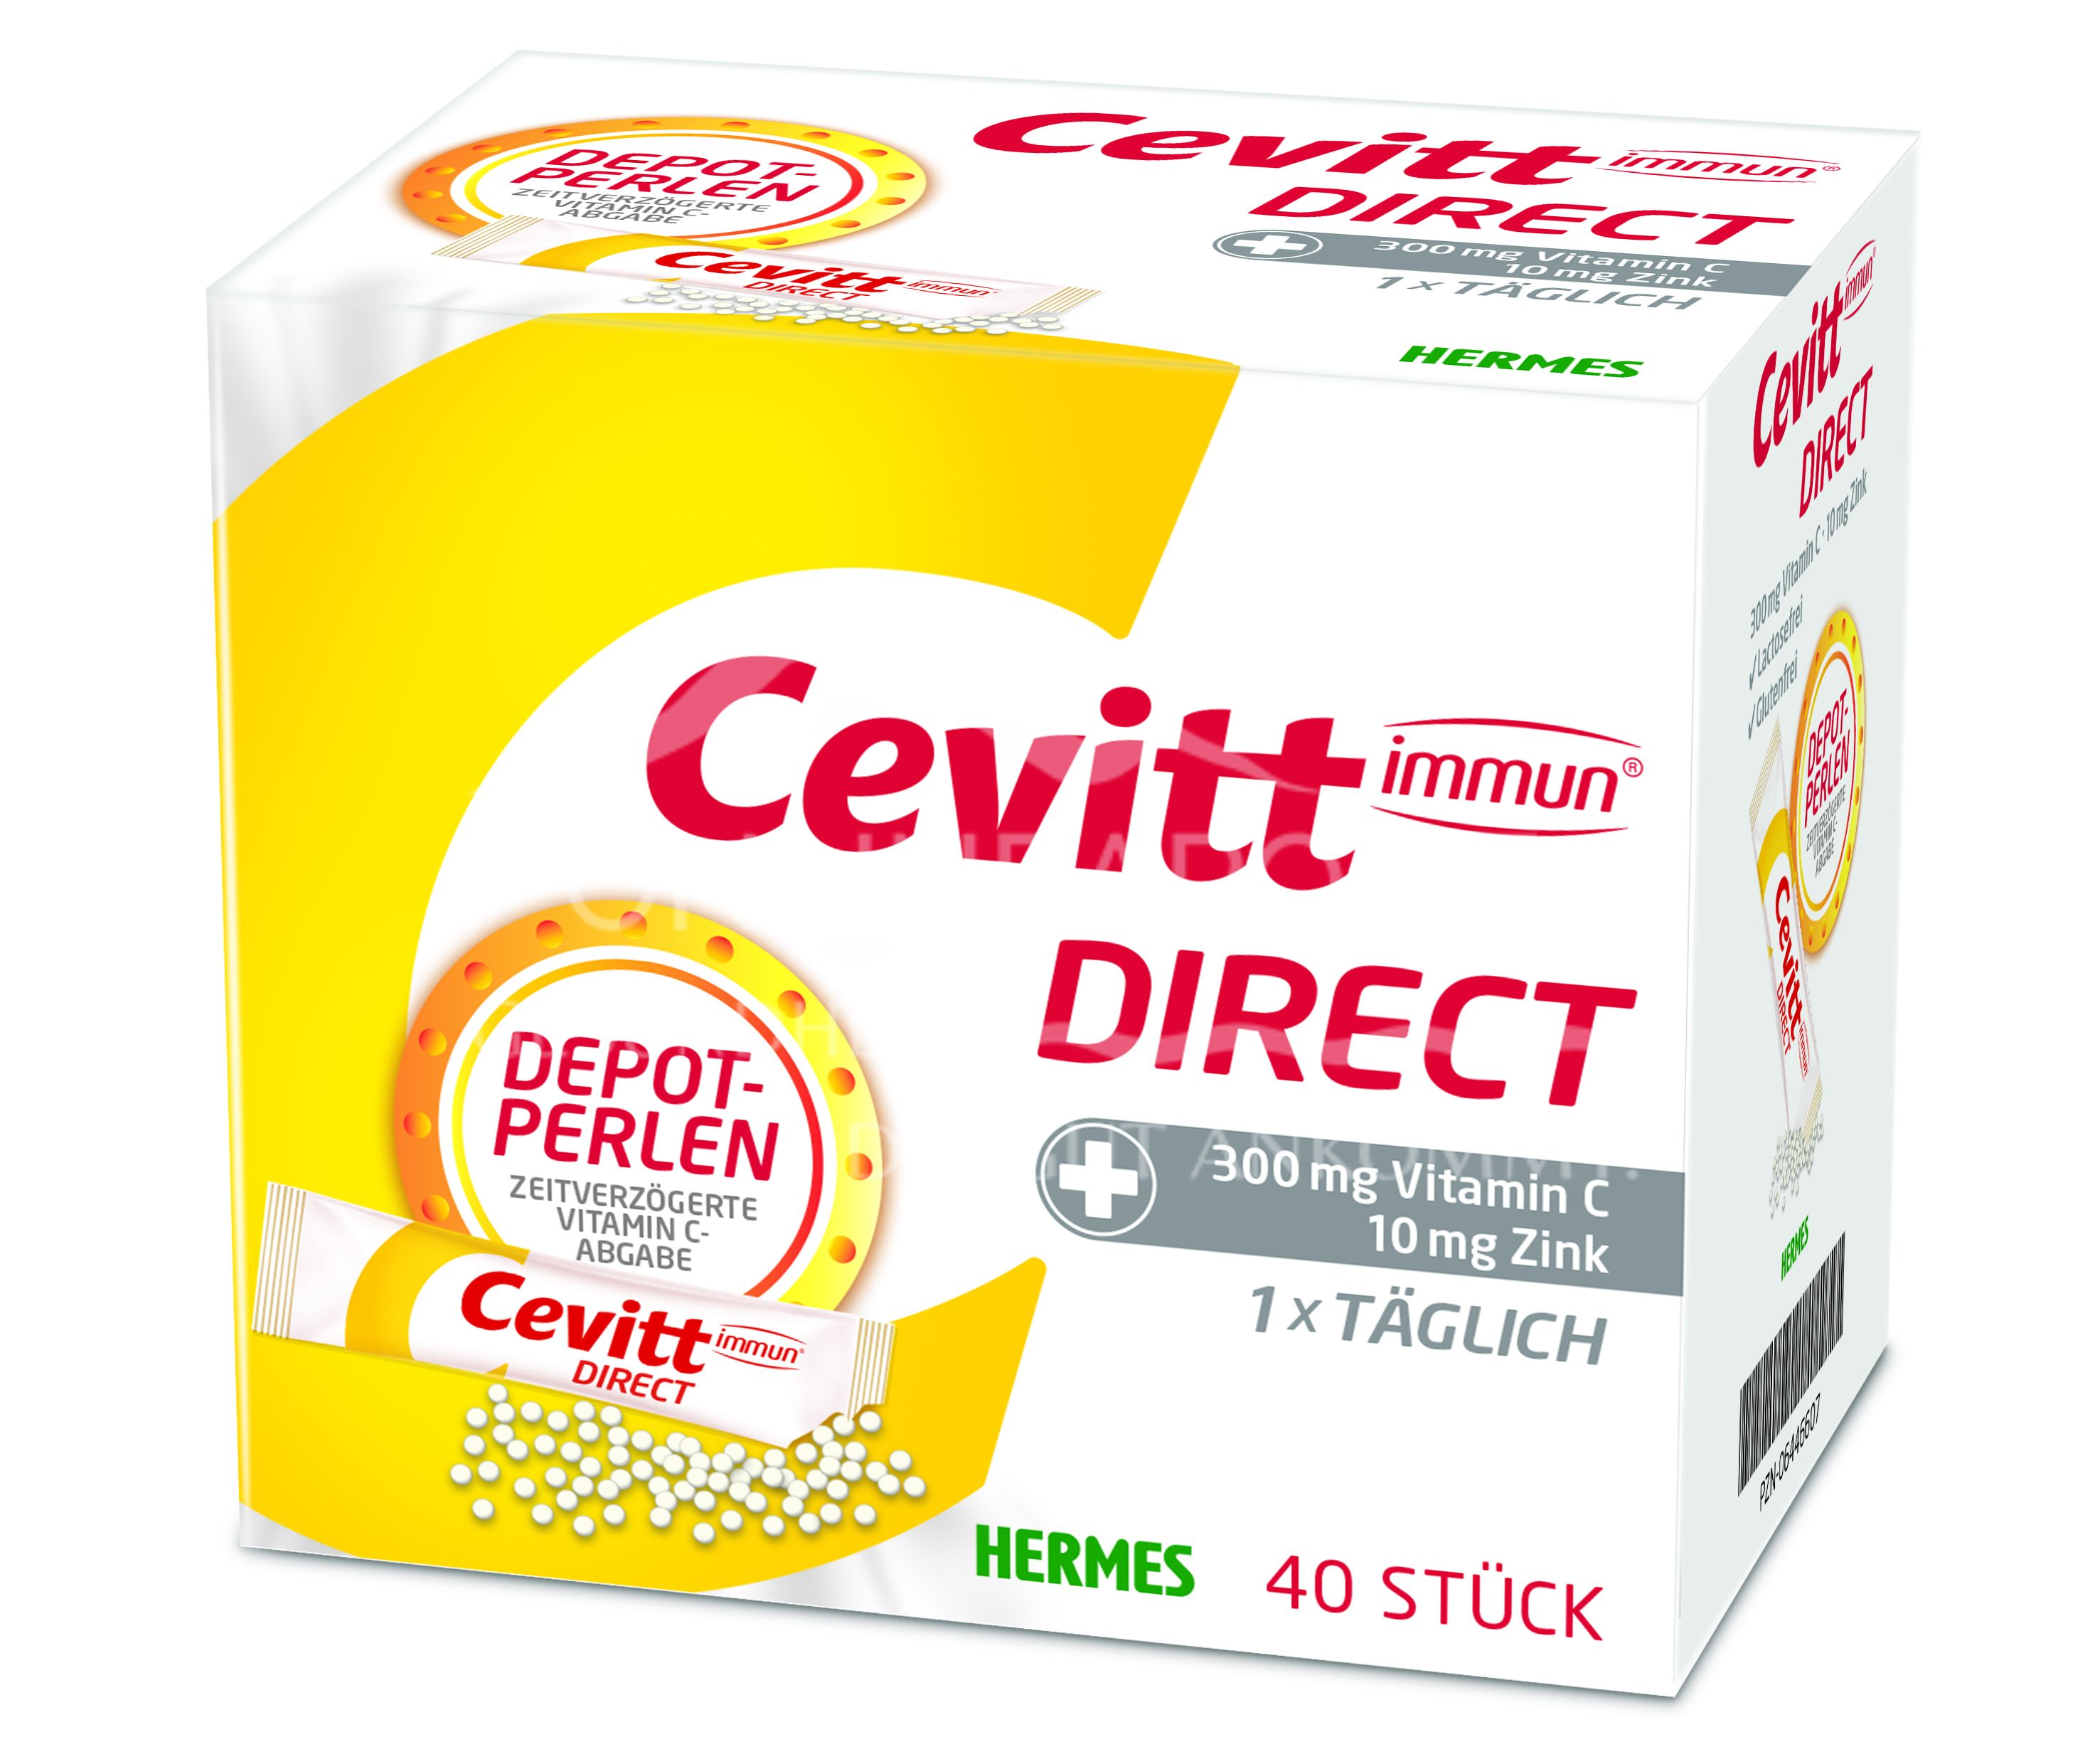 Cevitt immun® DIRECT Sticks